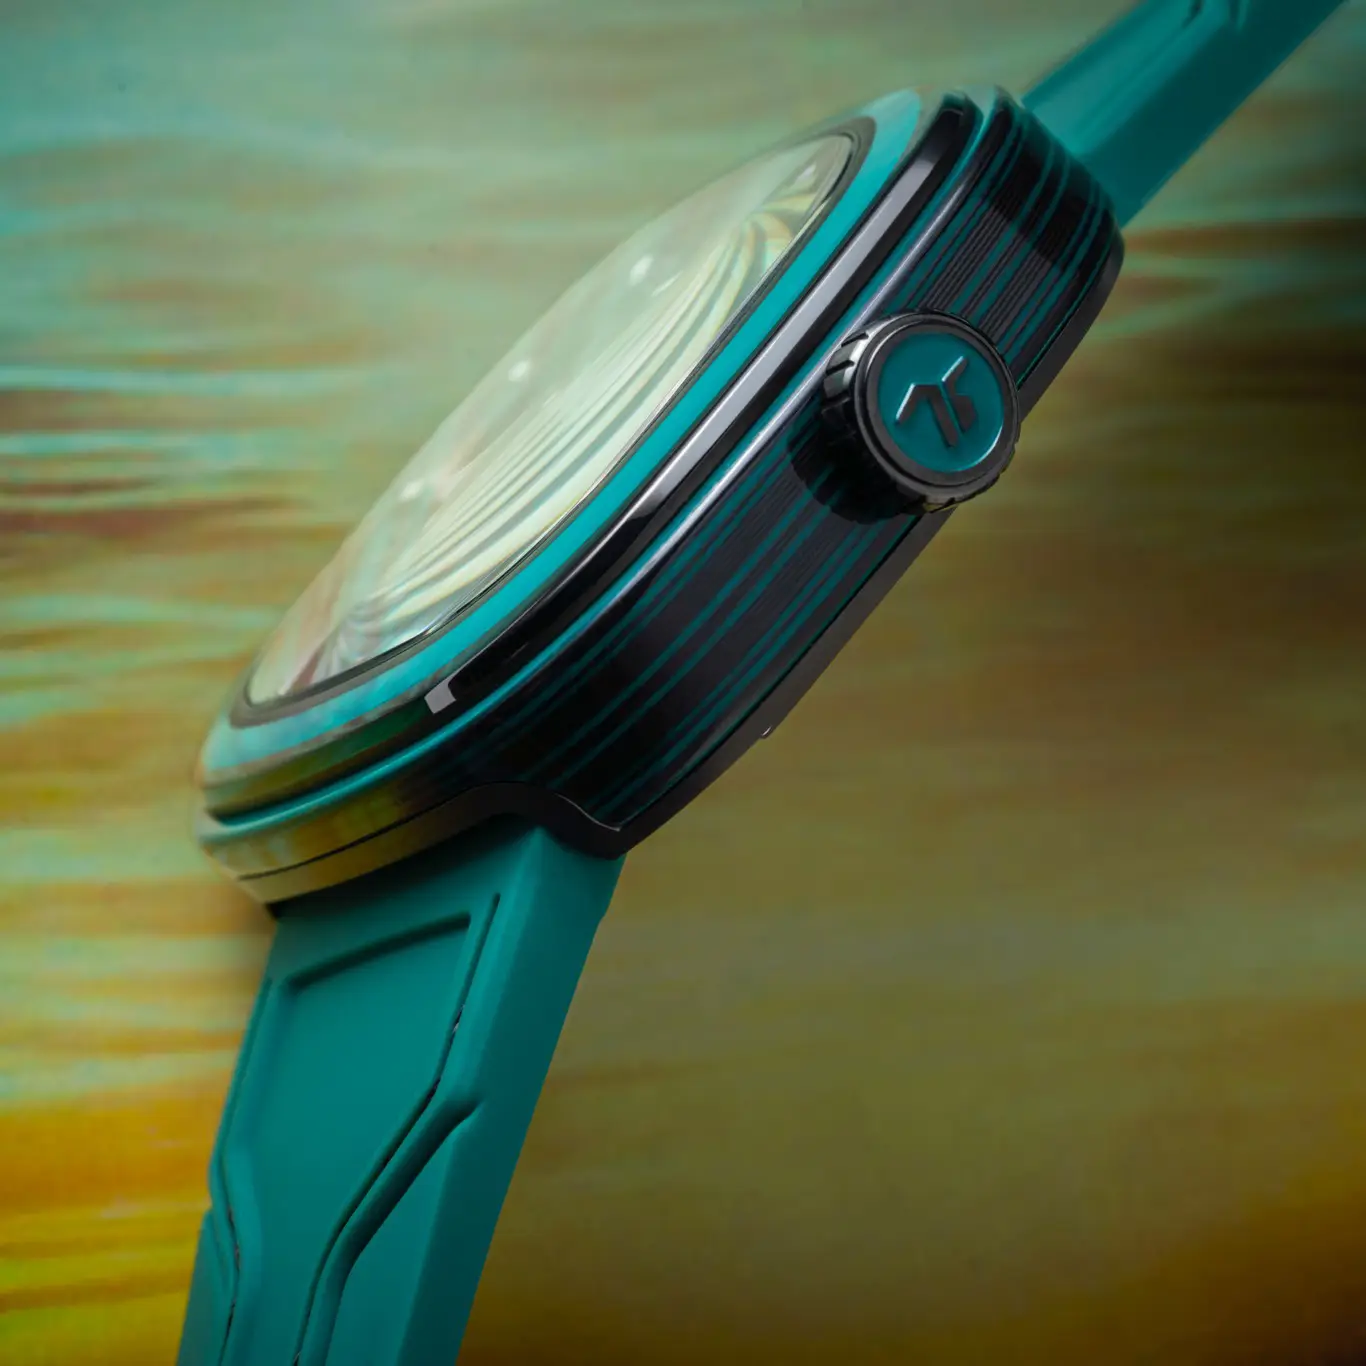 Đồng hồ SevenFriday PS3/05 AKA "CCG" mặt số màu xanh. Thiết kế lộ cơ. Dây đeo bằng cao su. Thân vỏ bằng thép.